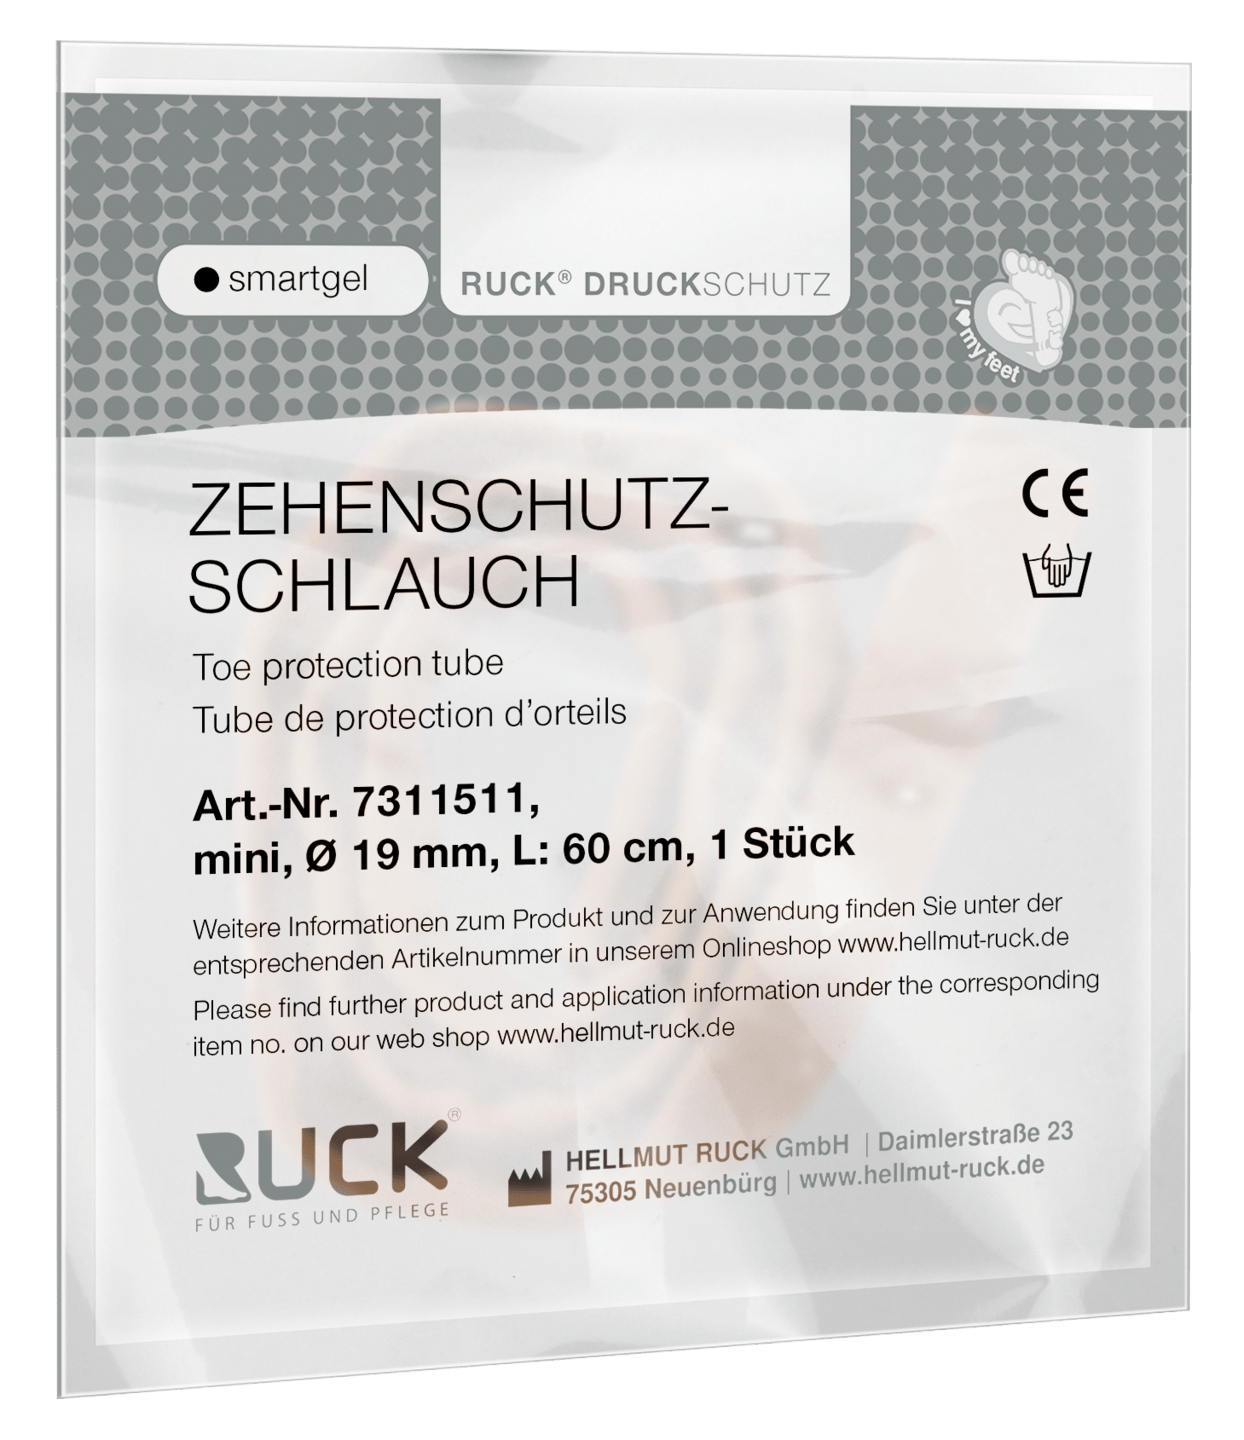 RUCK DRUCKSCHUTZ - Zehenschutzschlauch